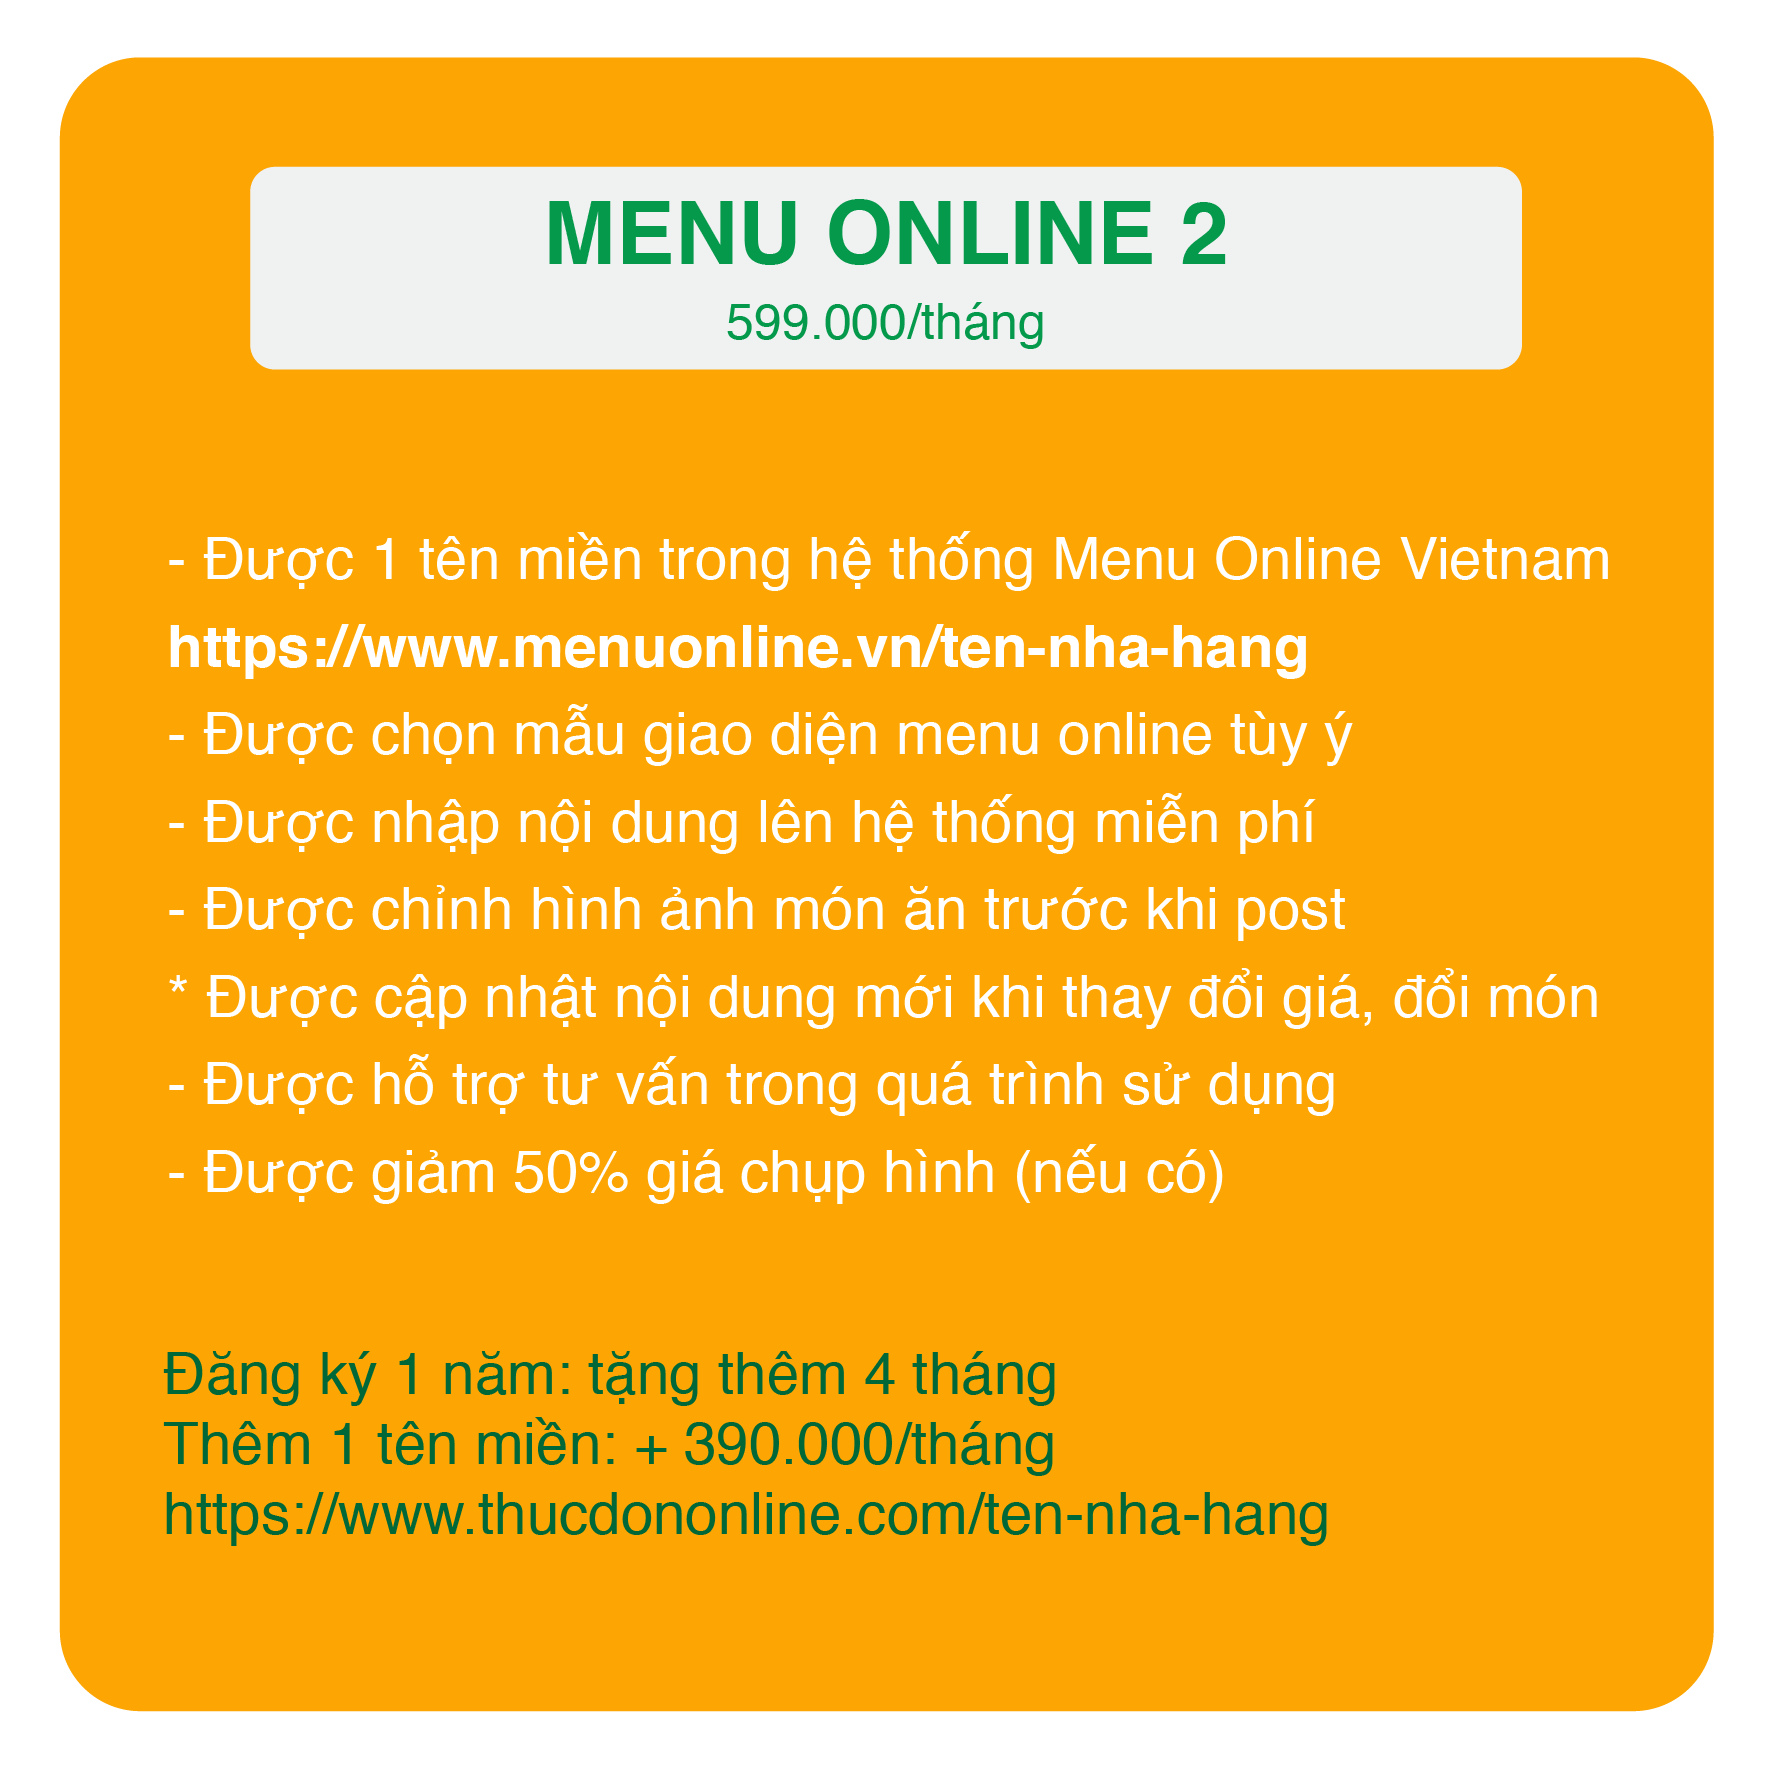 Bảng giá dịch vụ menu online 2